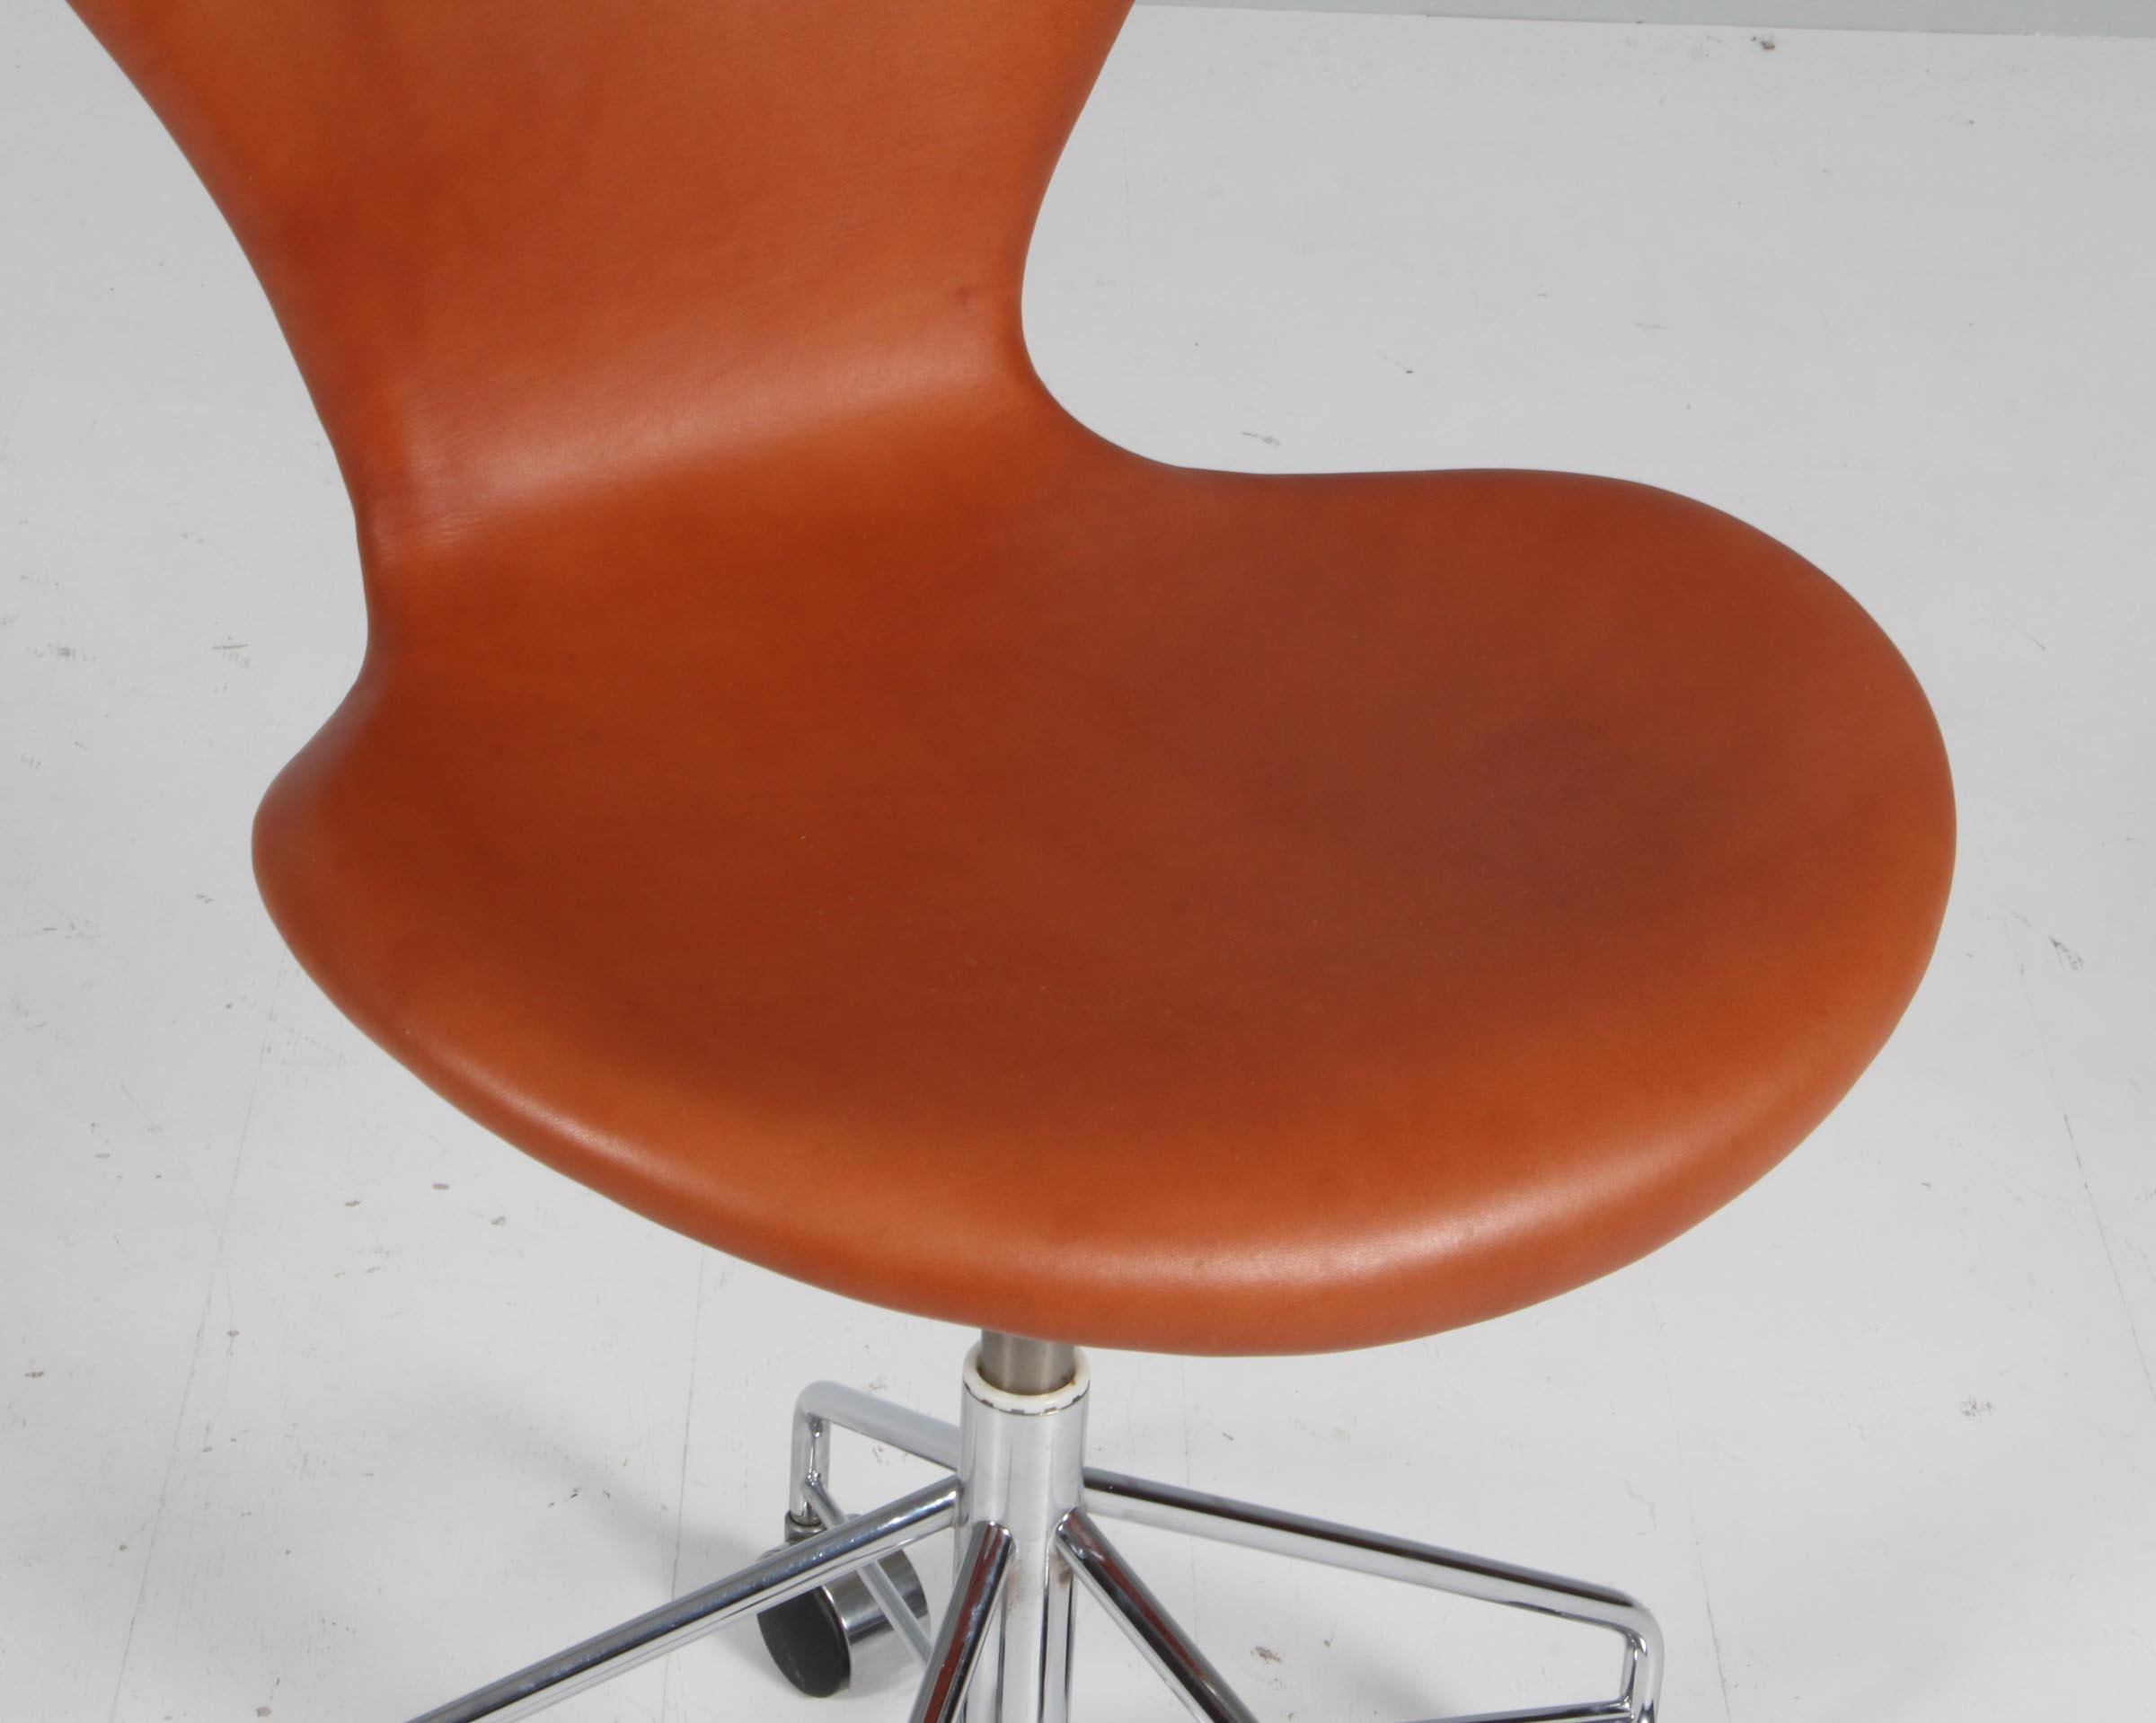 Danois Chaise de bureau Arne Jacobsen, modèle « Syveren » 3107, cuir aniline cognac